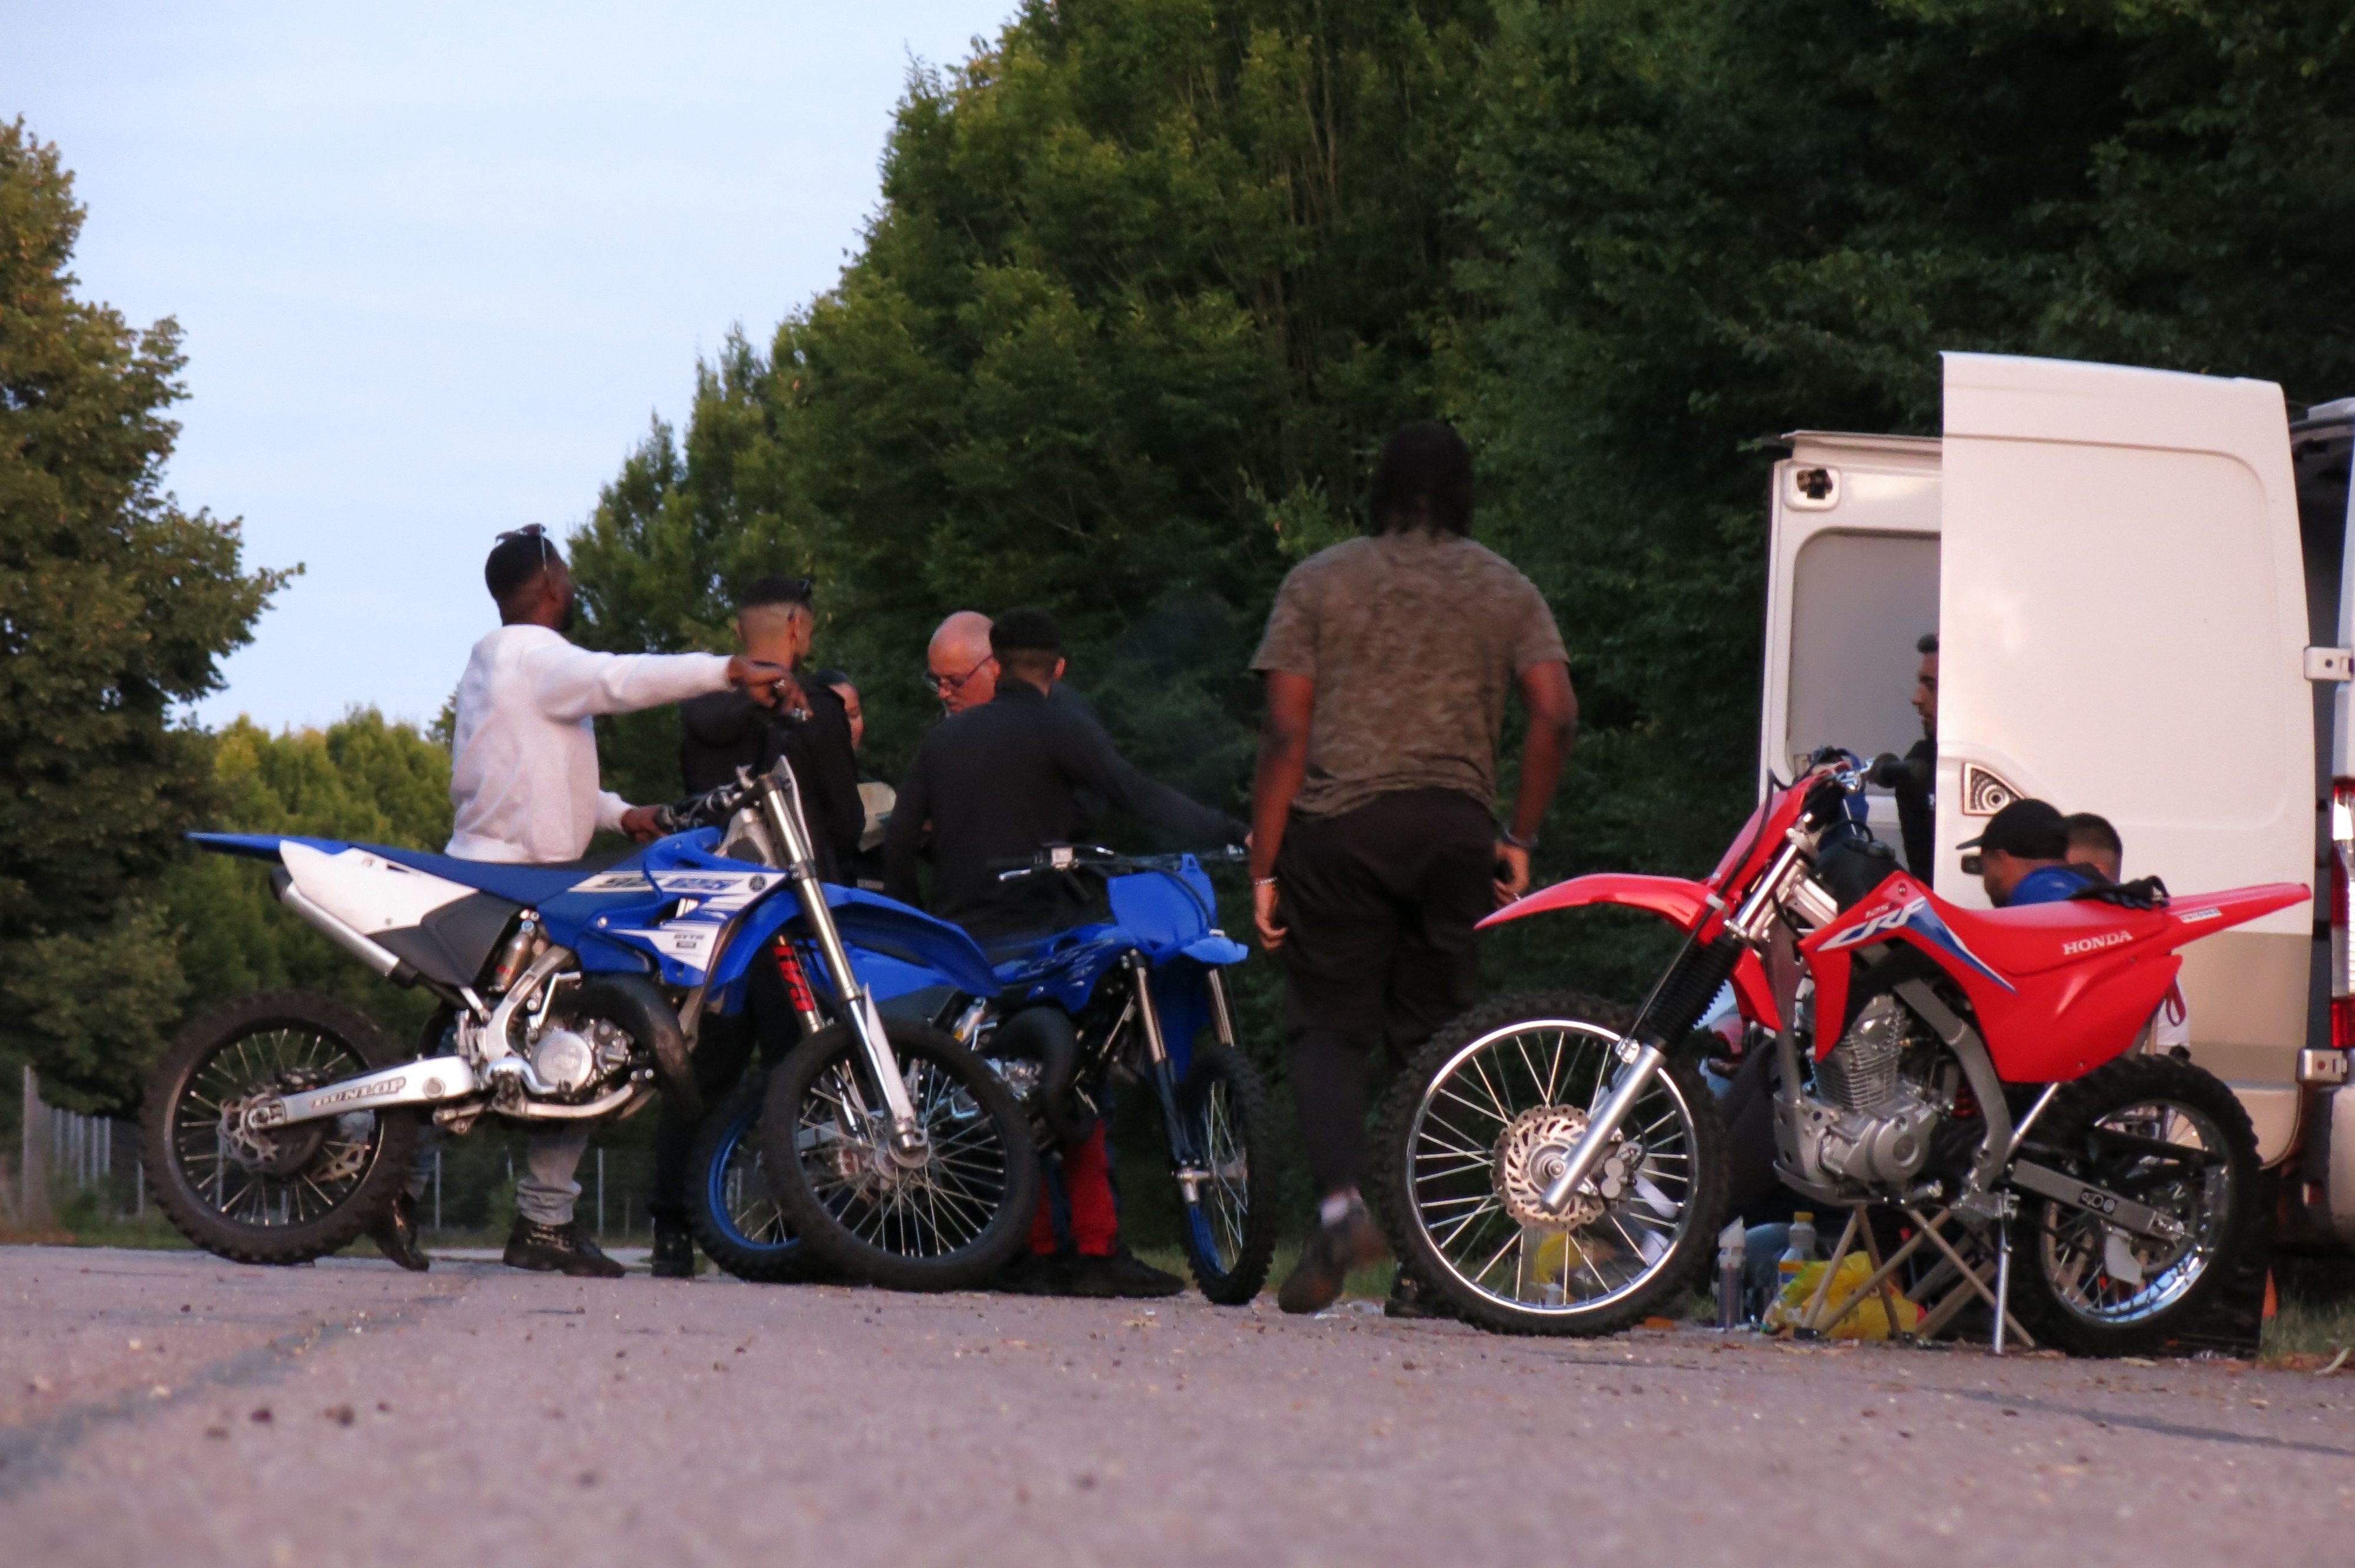 Méru (Oise), ce samedi soir. Un groupe d'individus est contrôlé par les gendarmes lors d'une opération de lutte contre les rodéos sauvages. Deux d'entre eux circulaient à motocross sans casque. LP/Paul Abran.